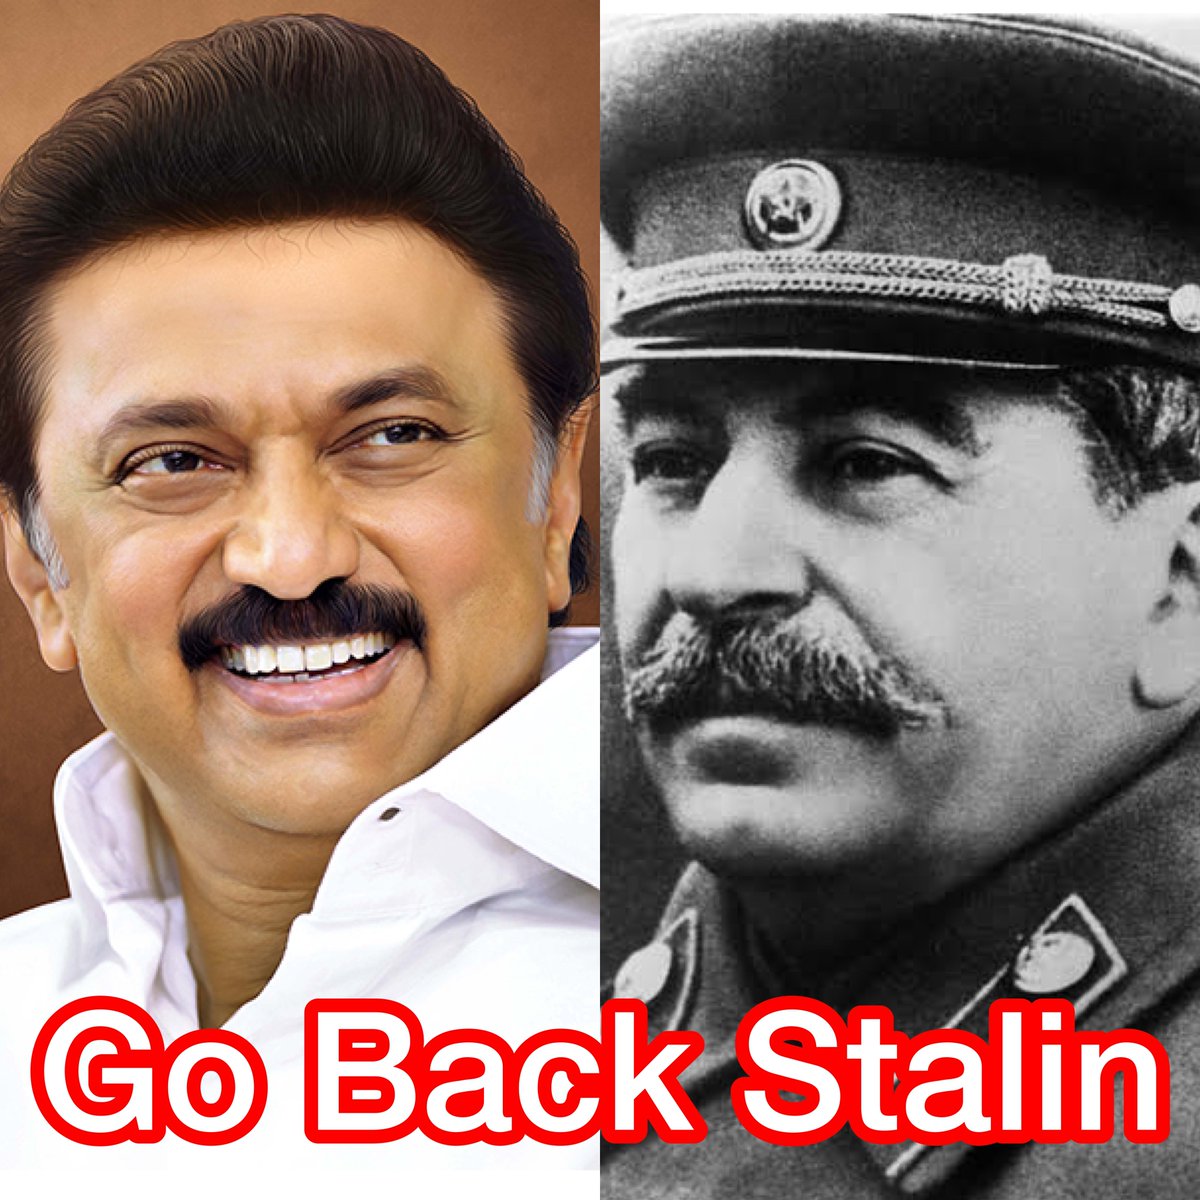 तमिलनाडु का मुख्यमंत्री स्टालिन जिसने राष्ट्रवादी मनीष कश्यप पर NSA लगाया, वह बिहार आ रहा है!

हमारा समर्थन #GoBackStalin हैशटैग को है और आप का भी समर्थन चाहिए

कौन था स्टालिन जिस से प्रभावित होकर करुणानिधि ने अपने बेटे का नाम स्टालिन रखा.?

जोसेफ स्टालिन का जन्म 18 दिसंबर 1879…